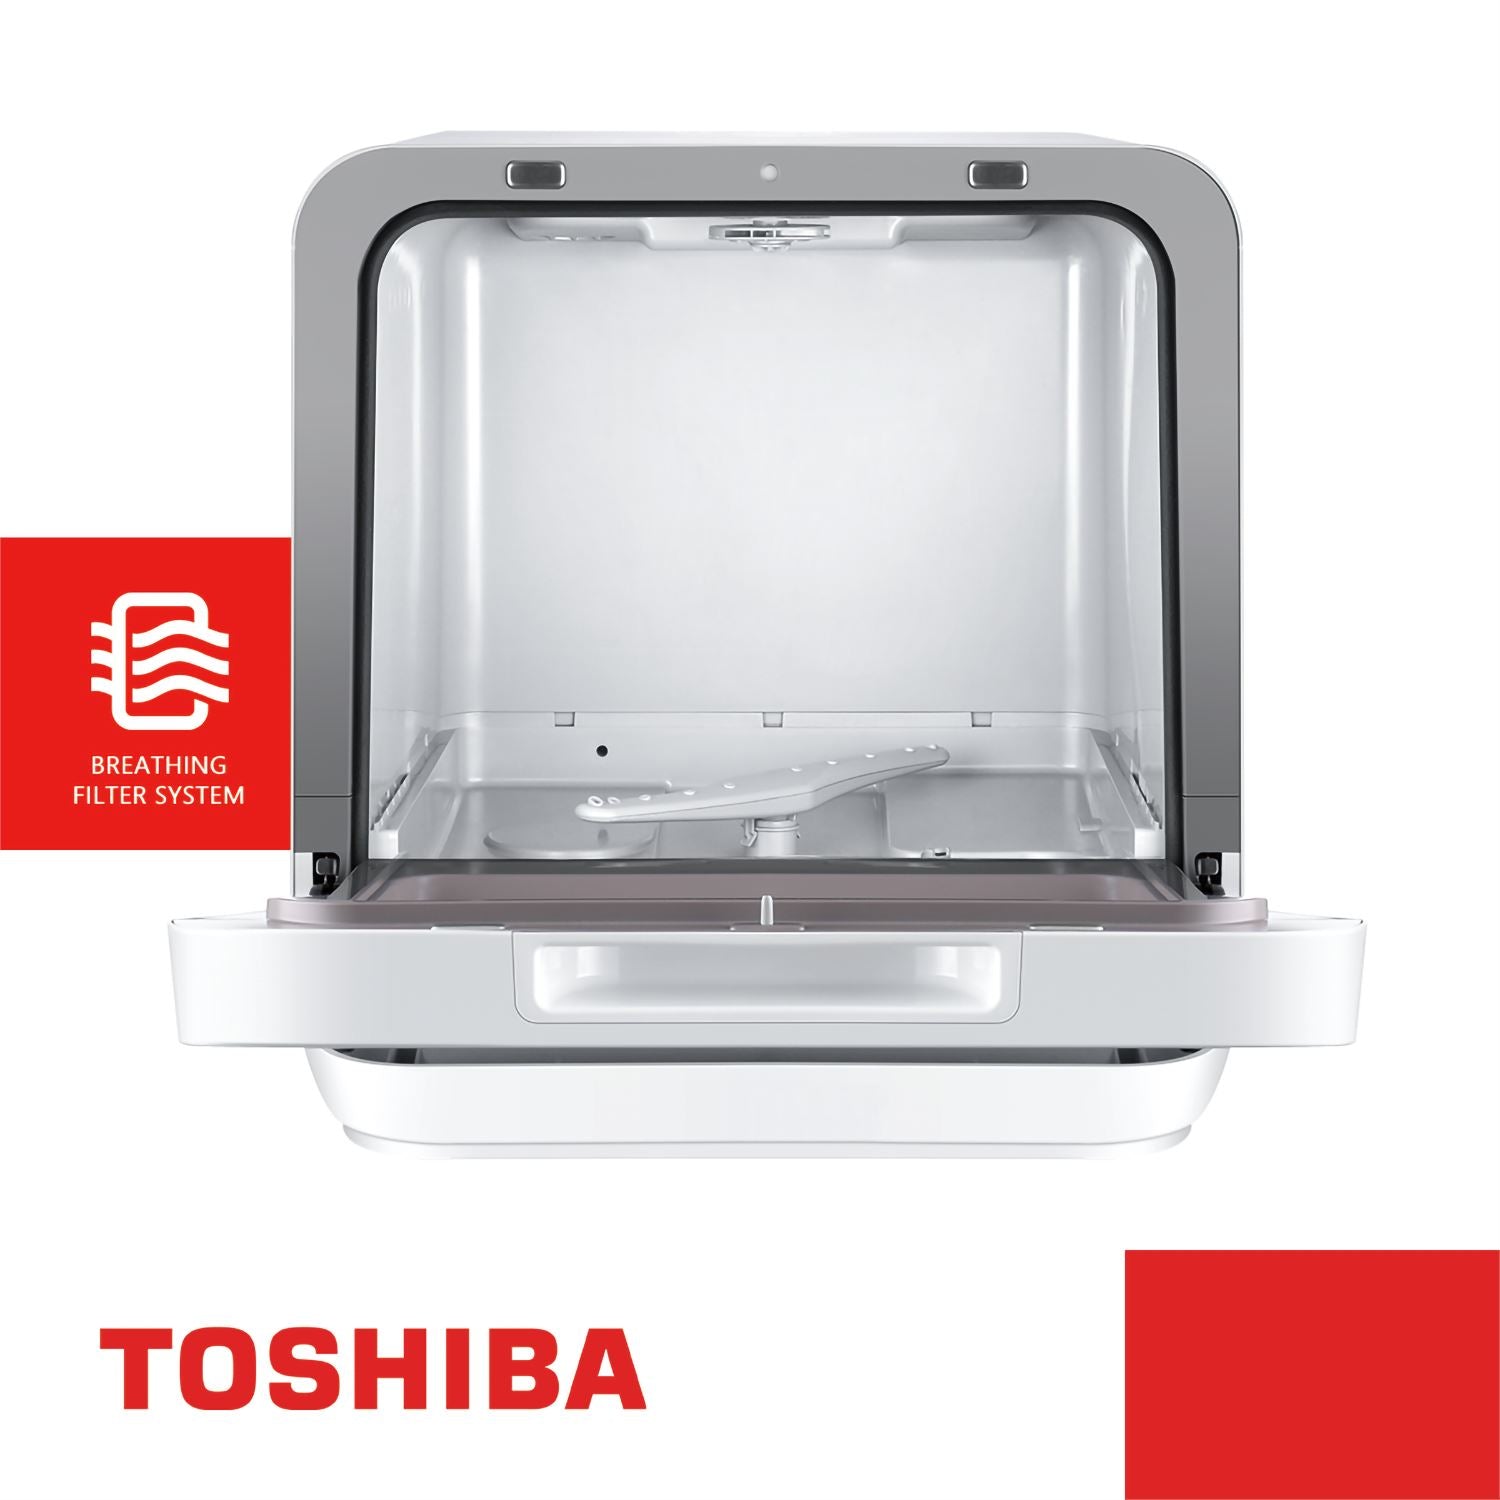 Toshiba 5L Multiple Purposes Portable Dishwasher,Black,DWS-22ASG(K) Toshiba 